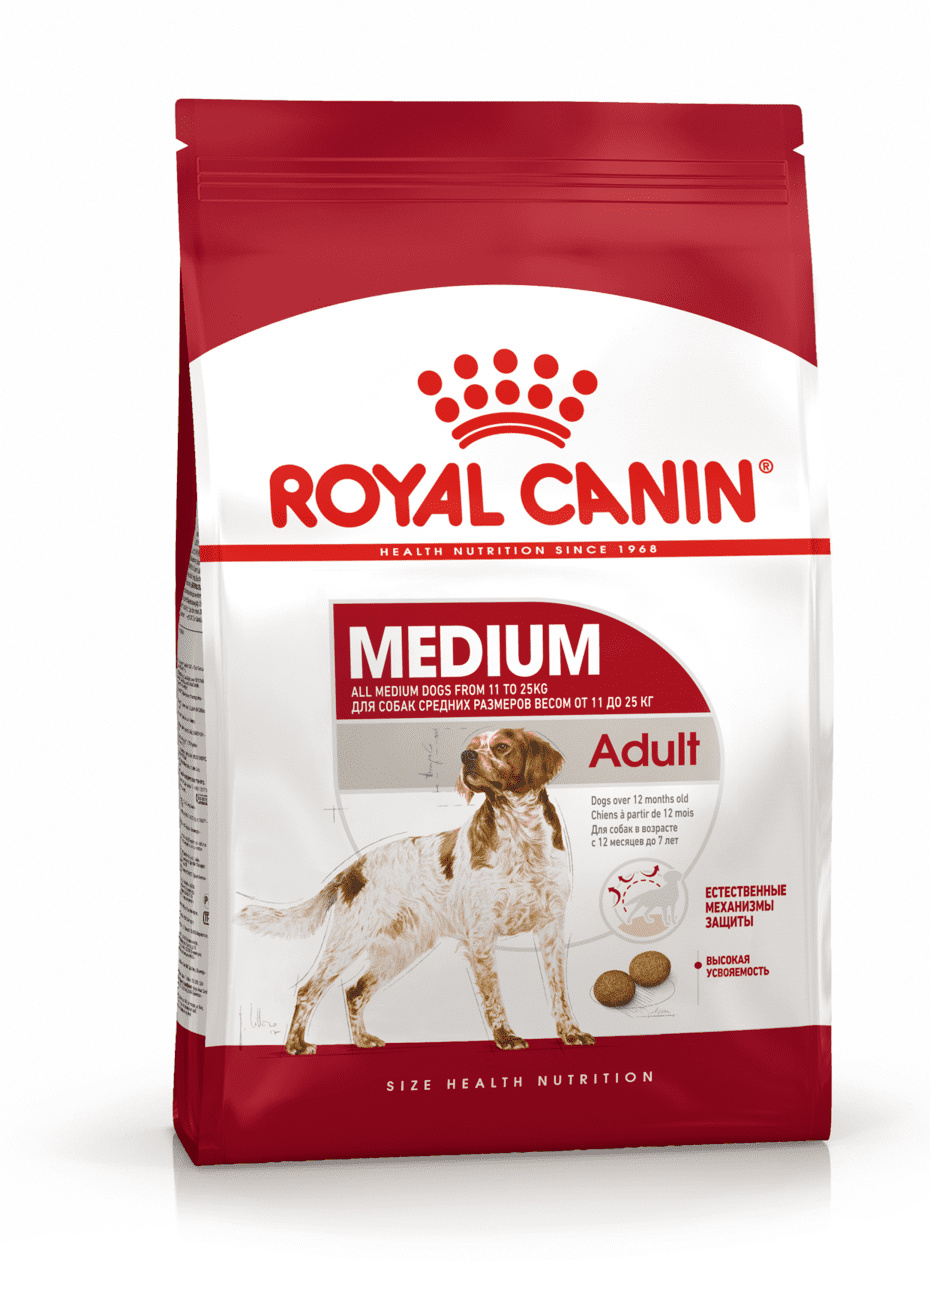 Для взрослых собак средних размеров: 11-25 кг, 1-7 лет (3 кг) Royal Canin (сухие корма) Для взрослых собак средних размеров: 11-25 кг, 1-7 лет (3 кг) - фото 1